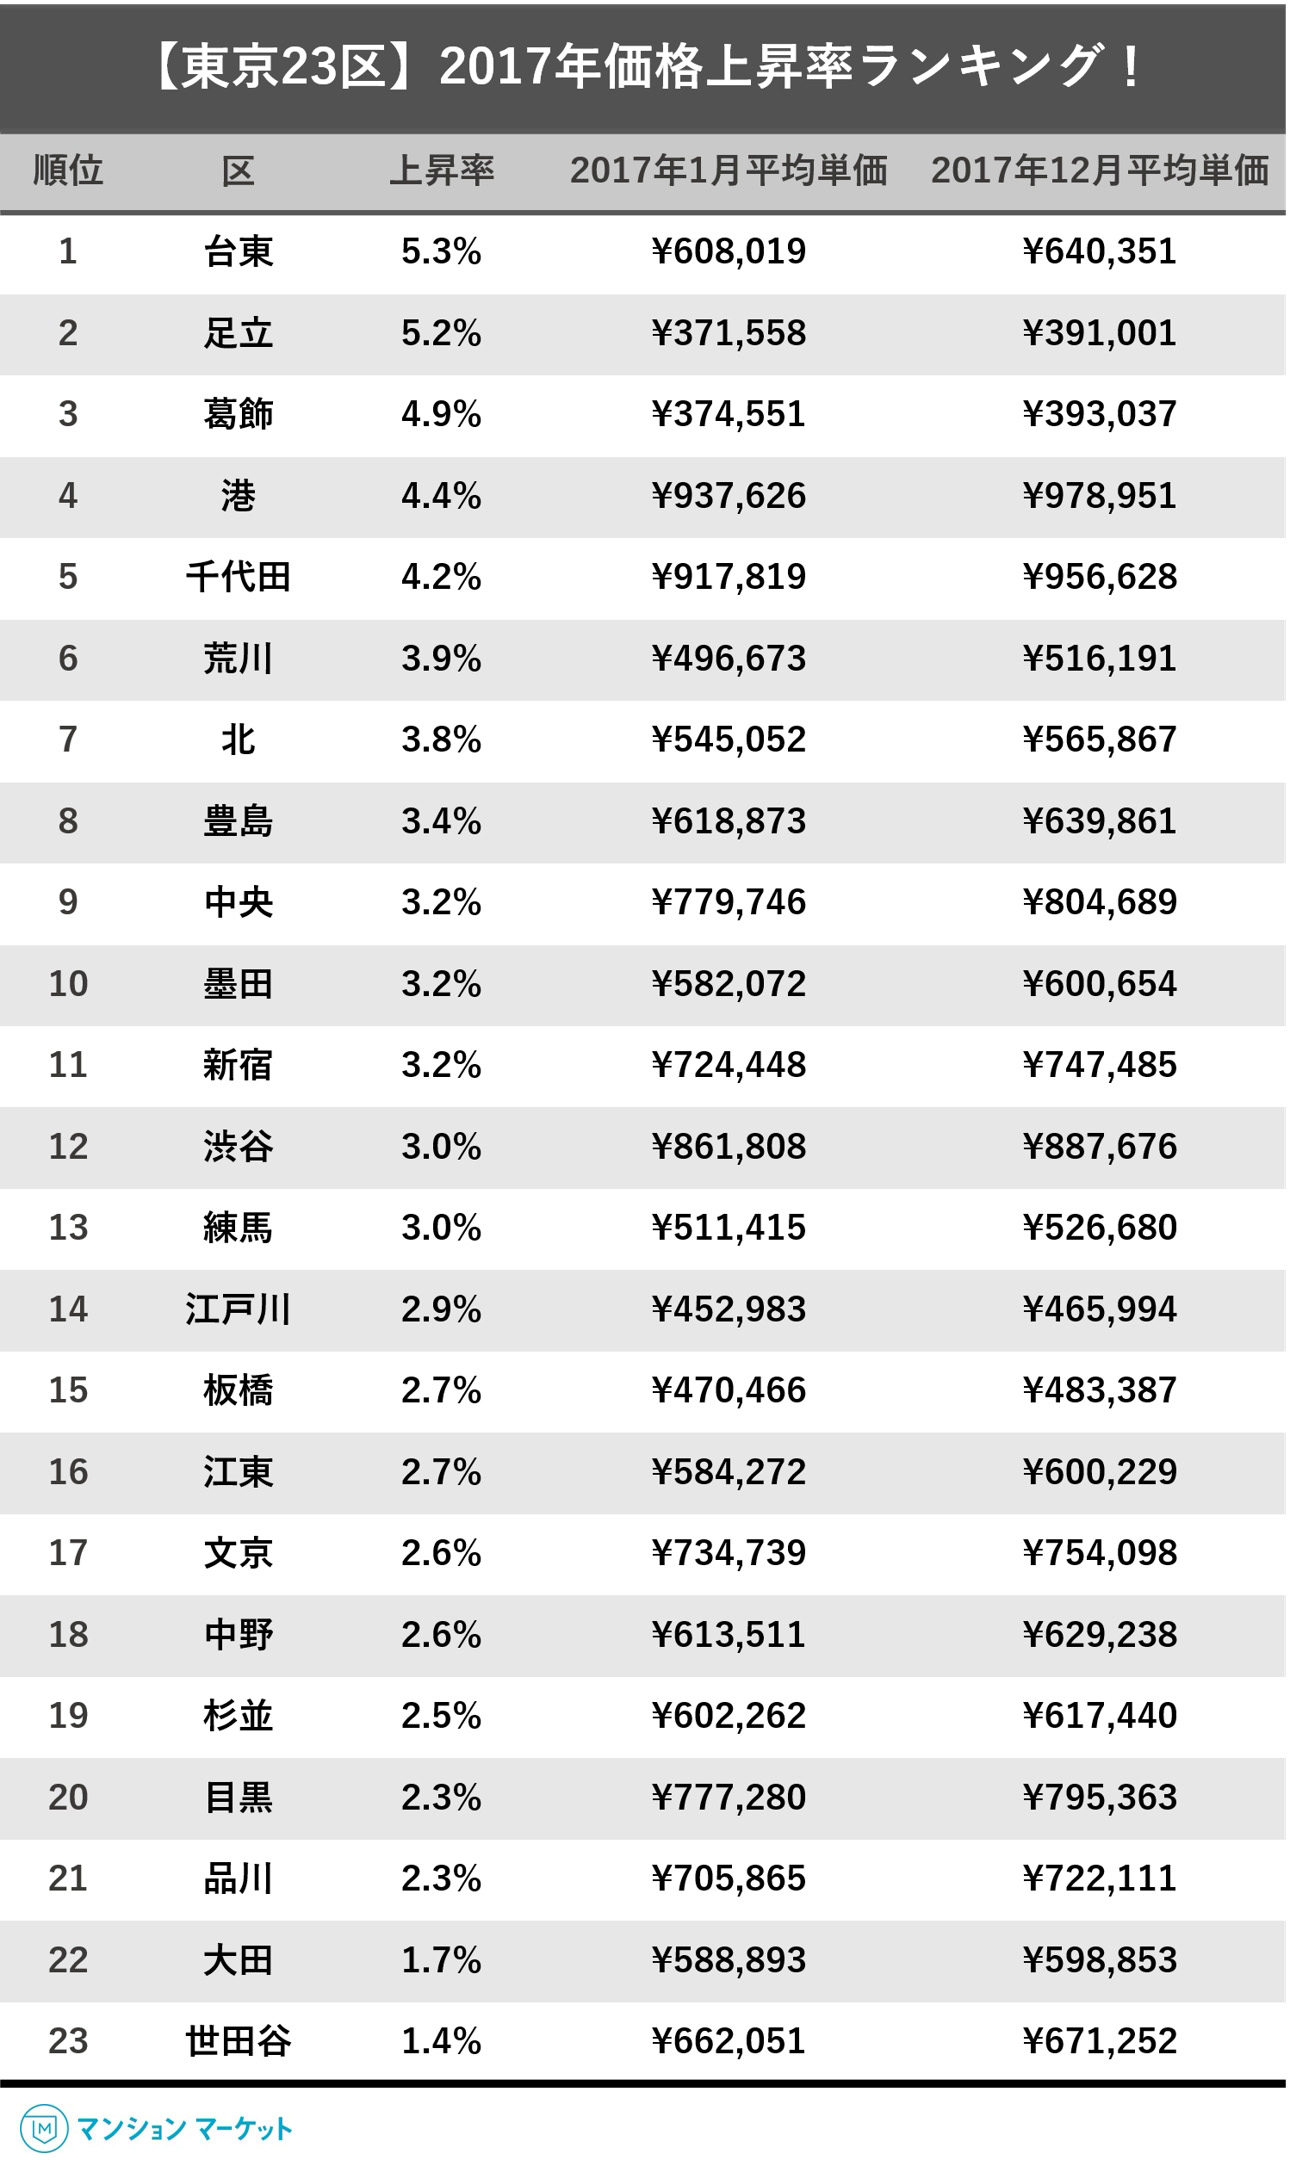 東京23区内＆駅徒歩10分圏内のマンションを対象とした、2017年の値上がり率ランキング（1平米単価）。クリックで拡大します